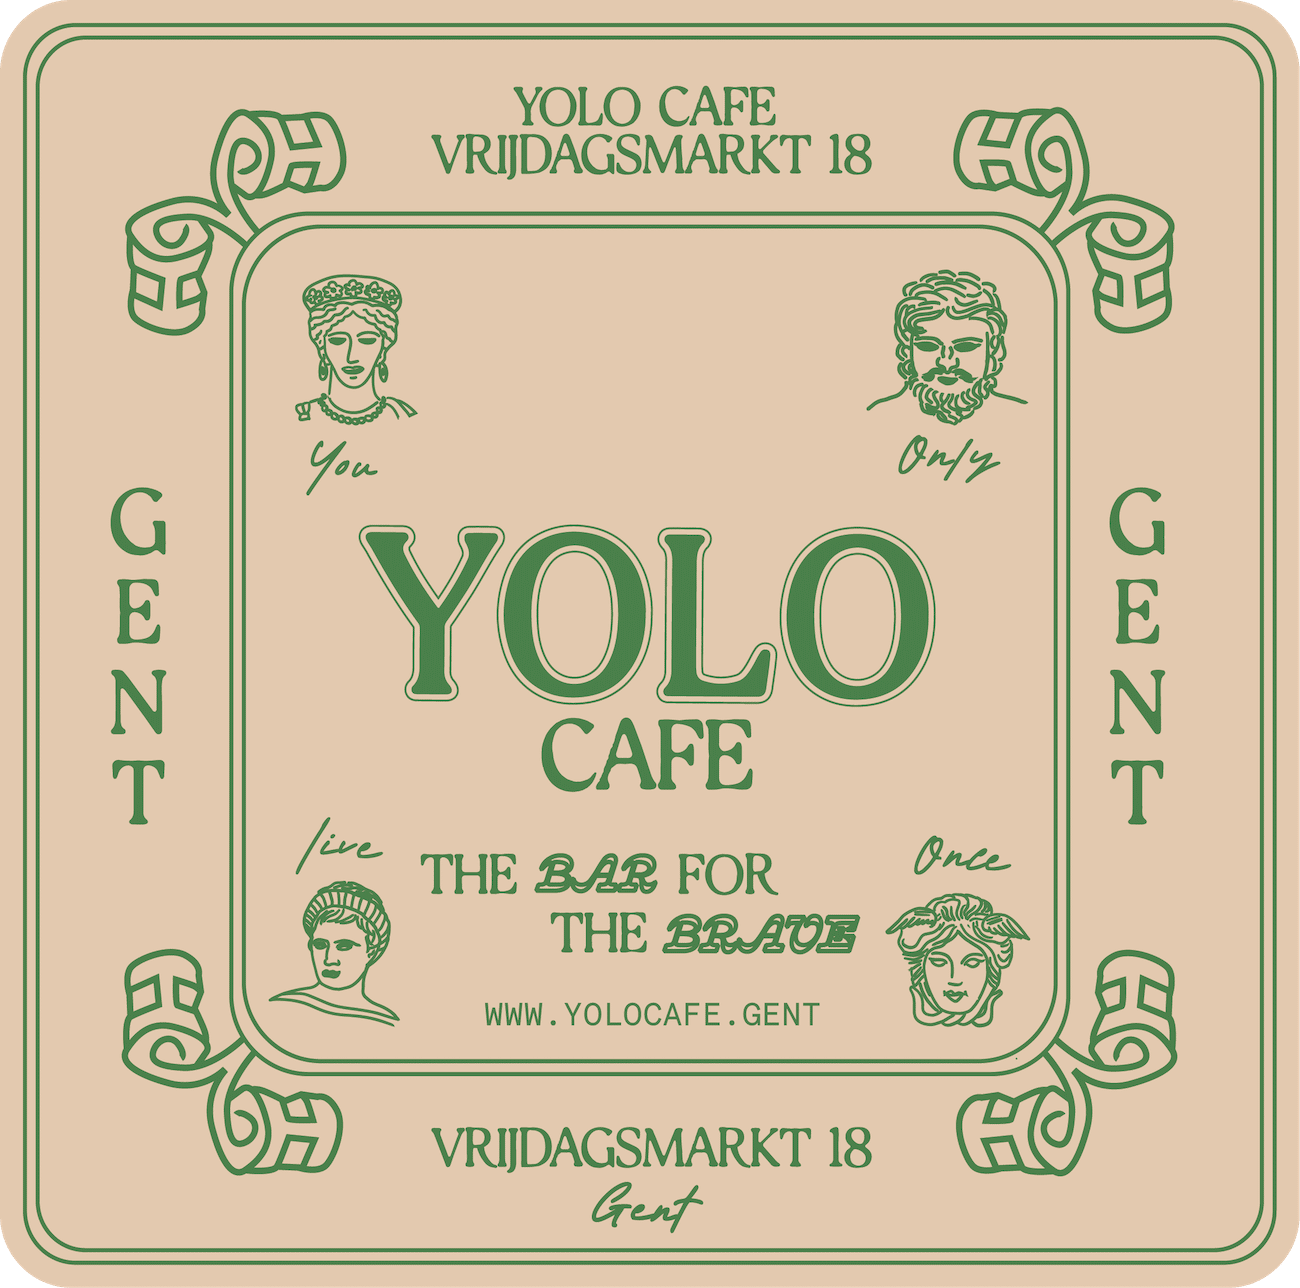 Yolo-Cafe Gent: Brand-Identity, Karten-Design, Grün auf Sand